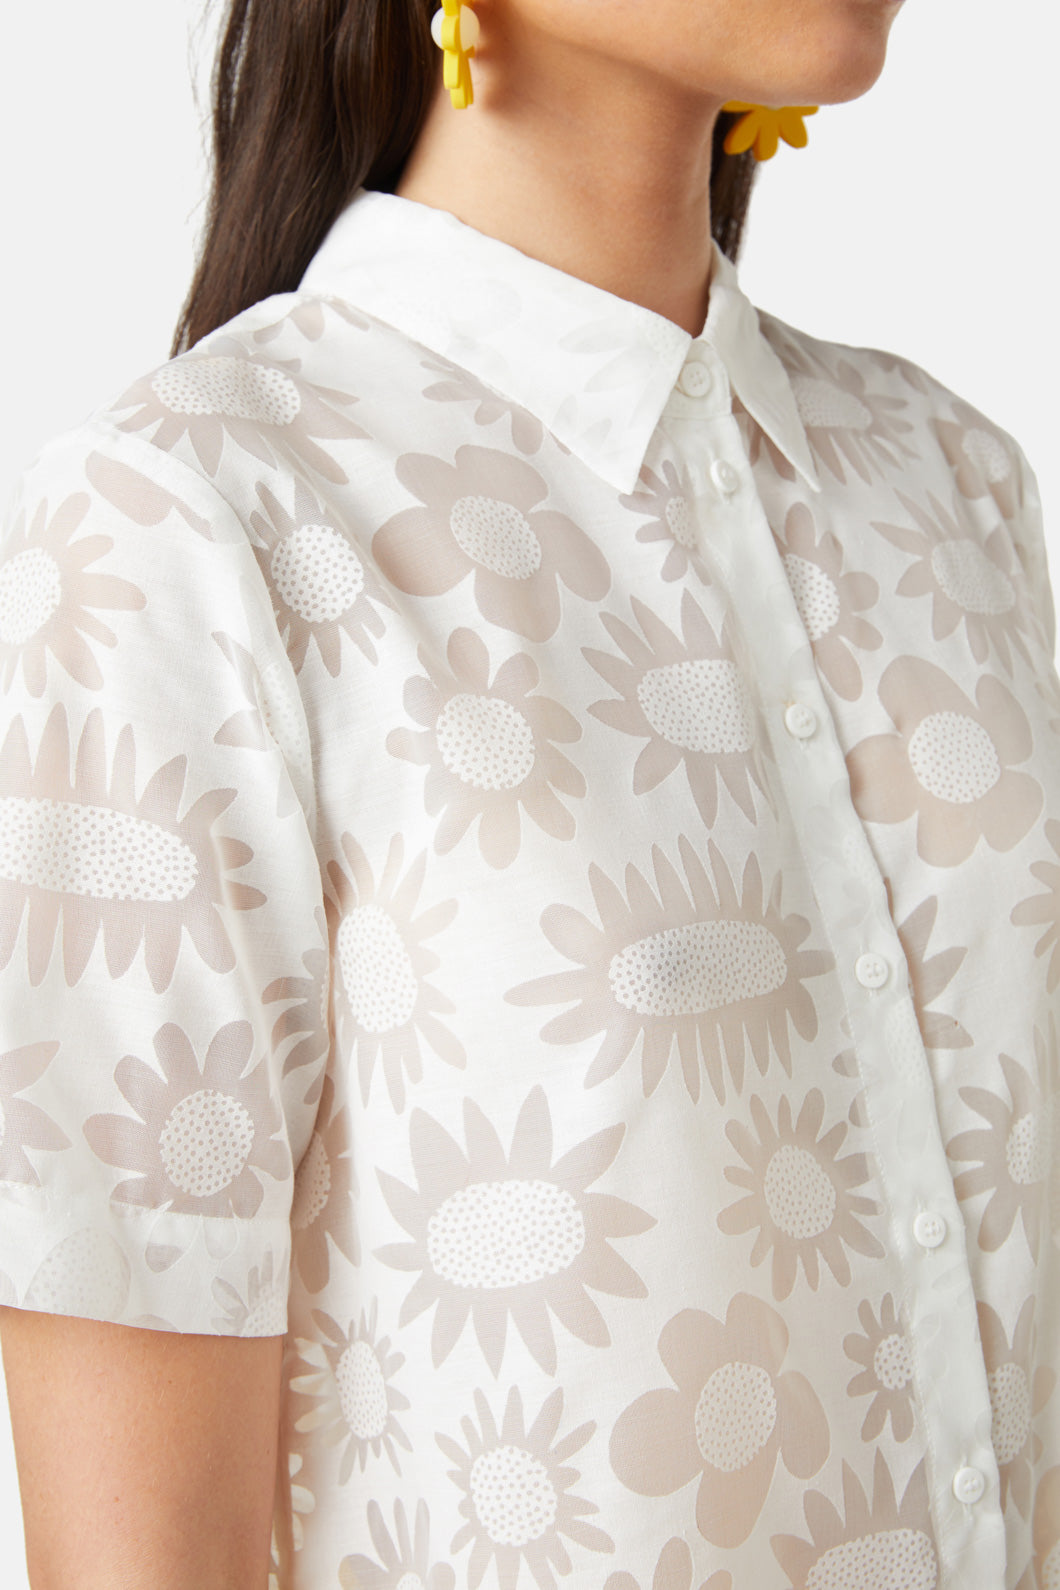 Flowering Burnout Shirt – Gorman